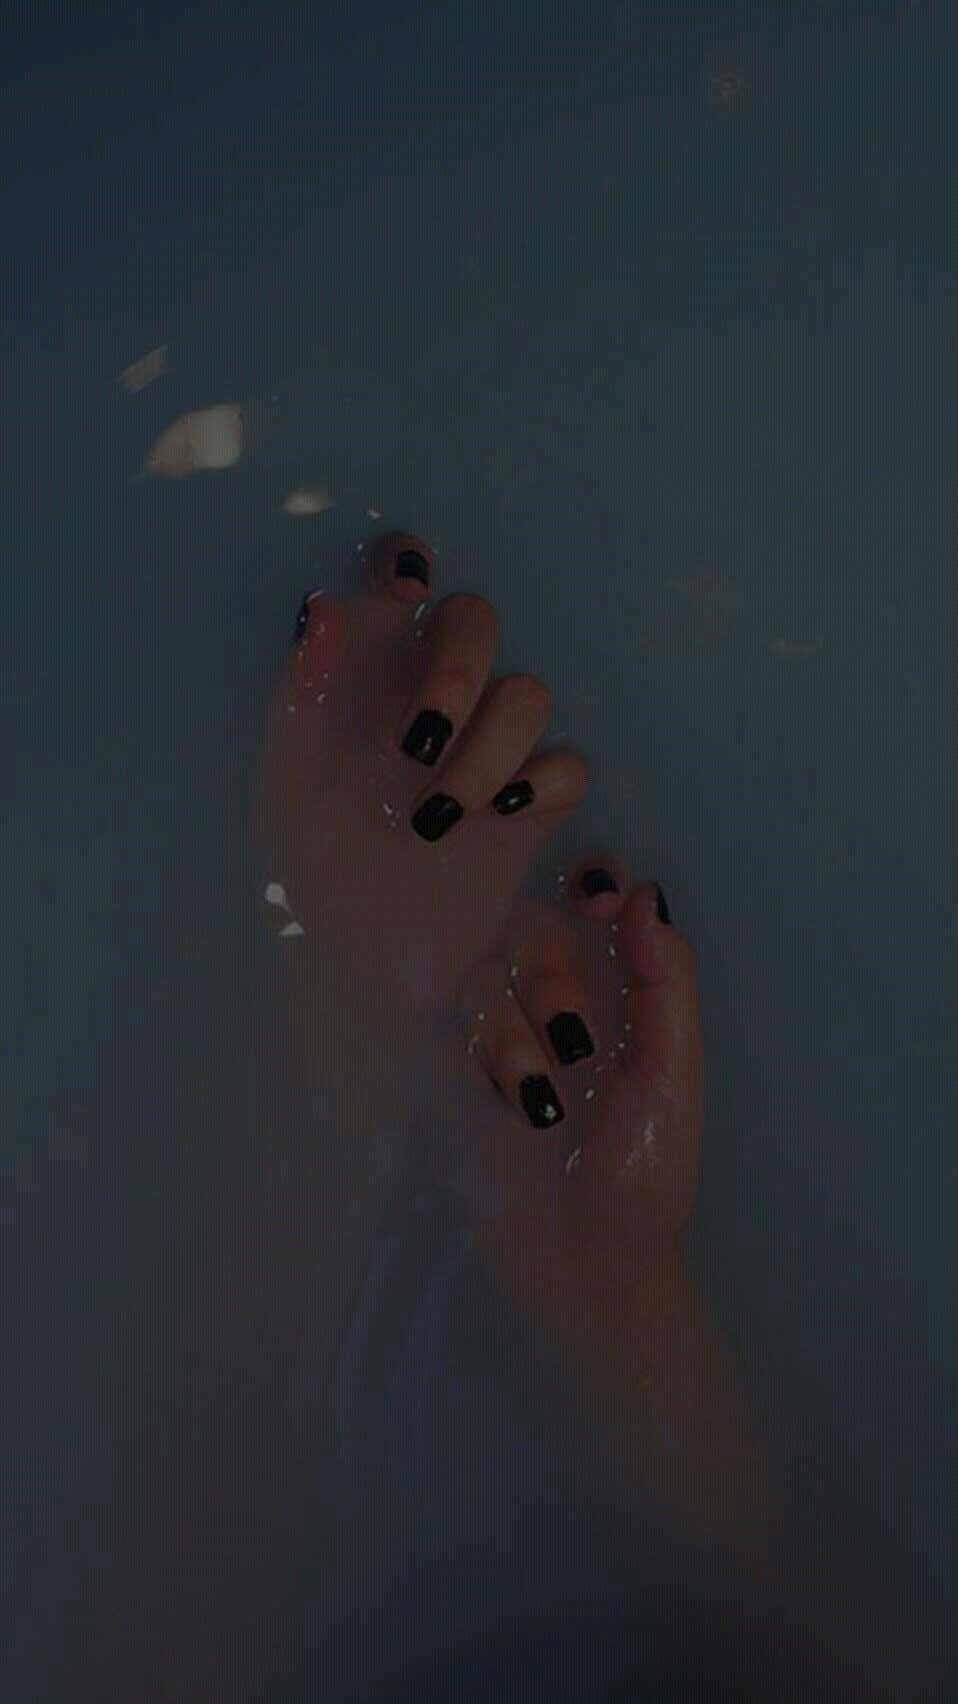 A Person's Feet In A Bath Tub Wallpaper